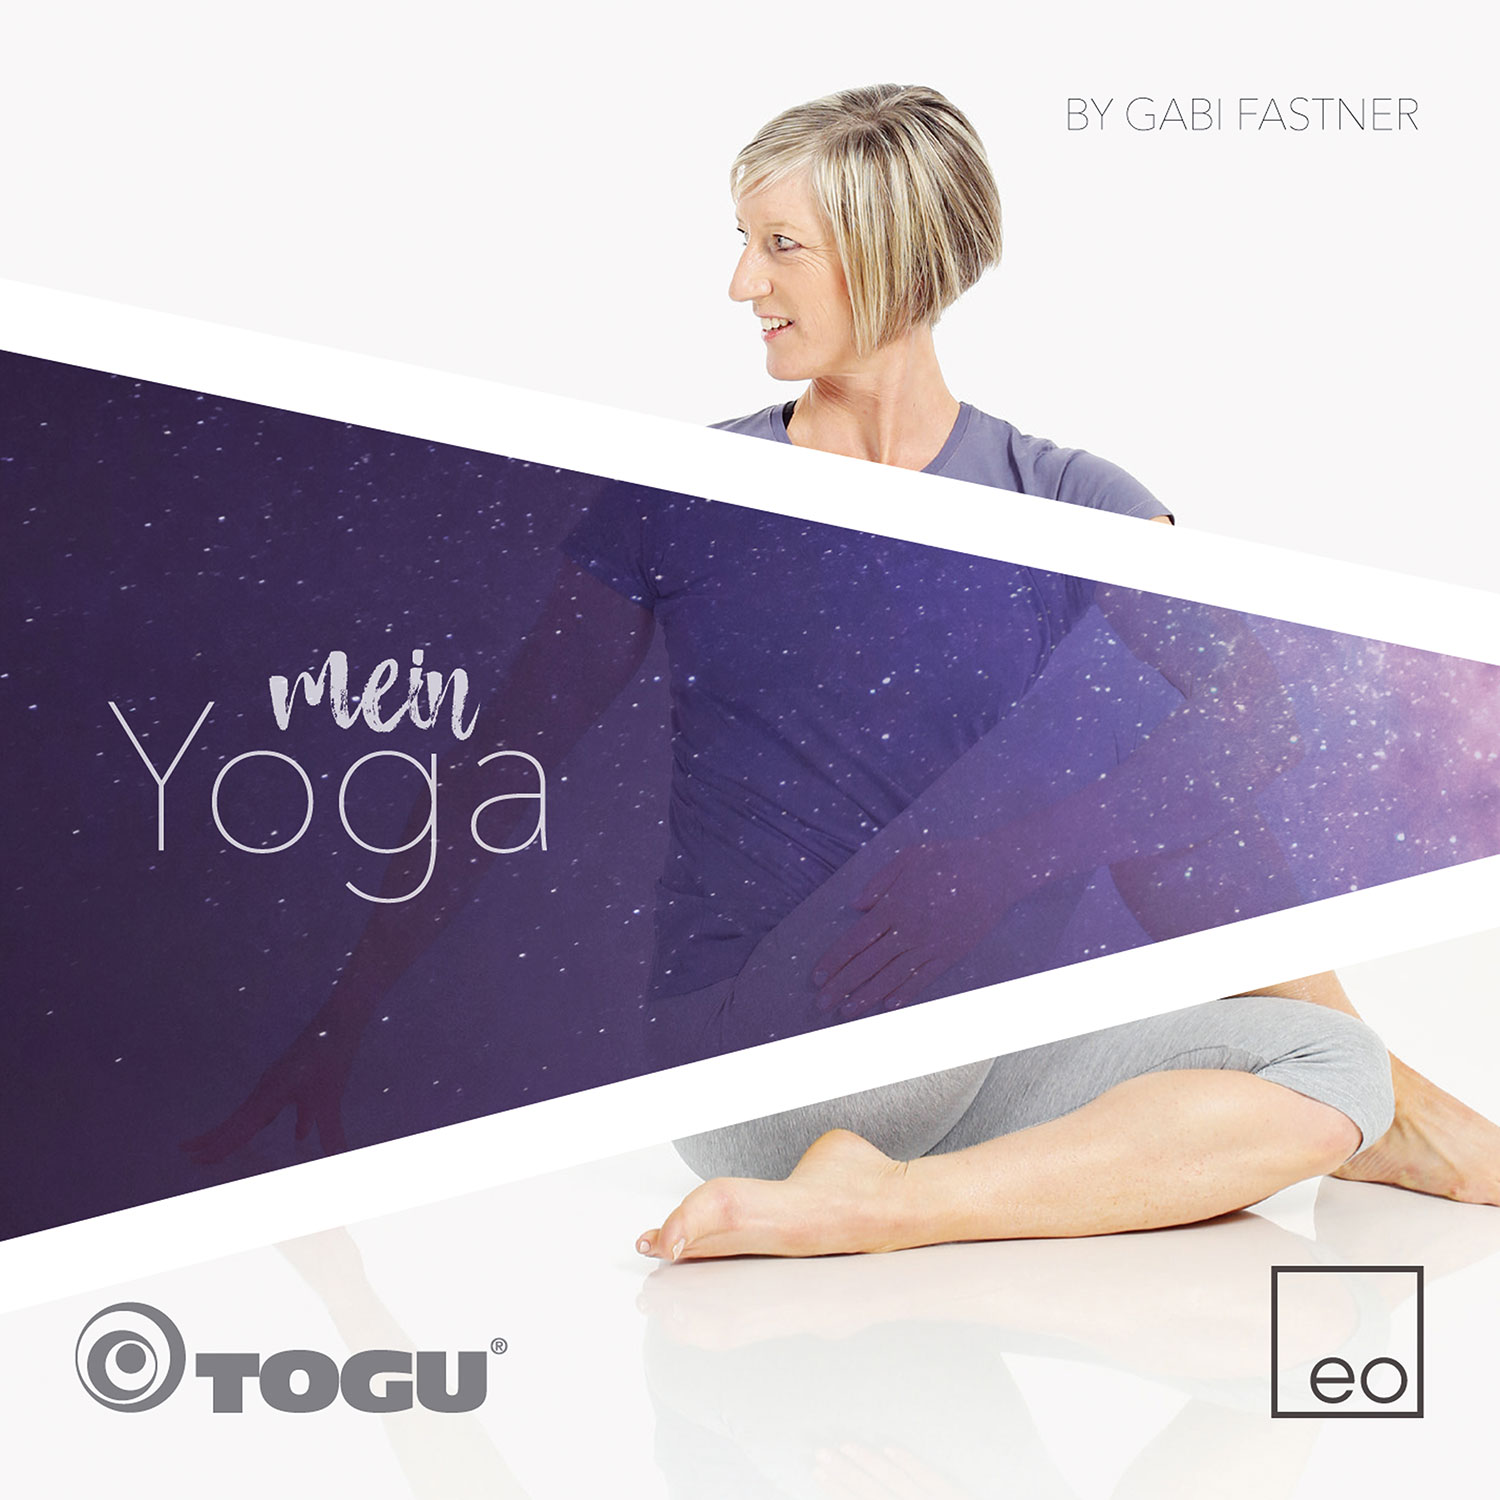 EO Mein Yoga by Gaby Fastner